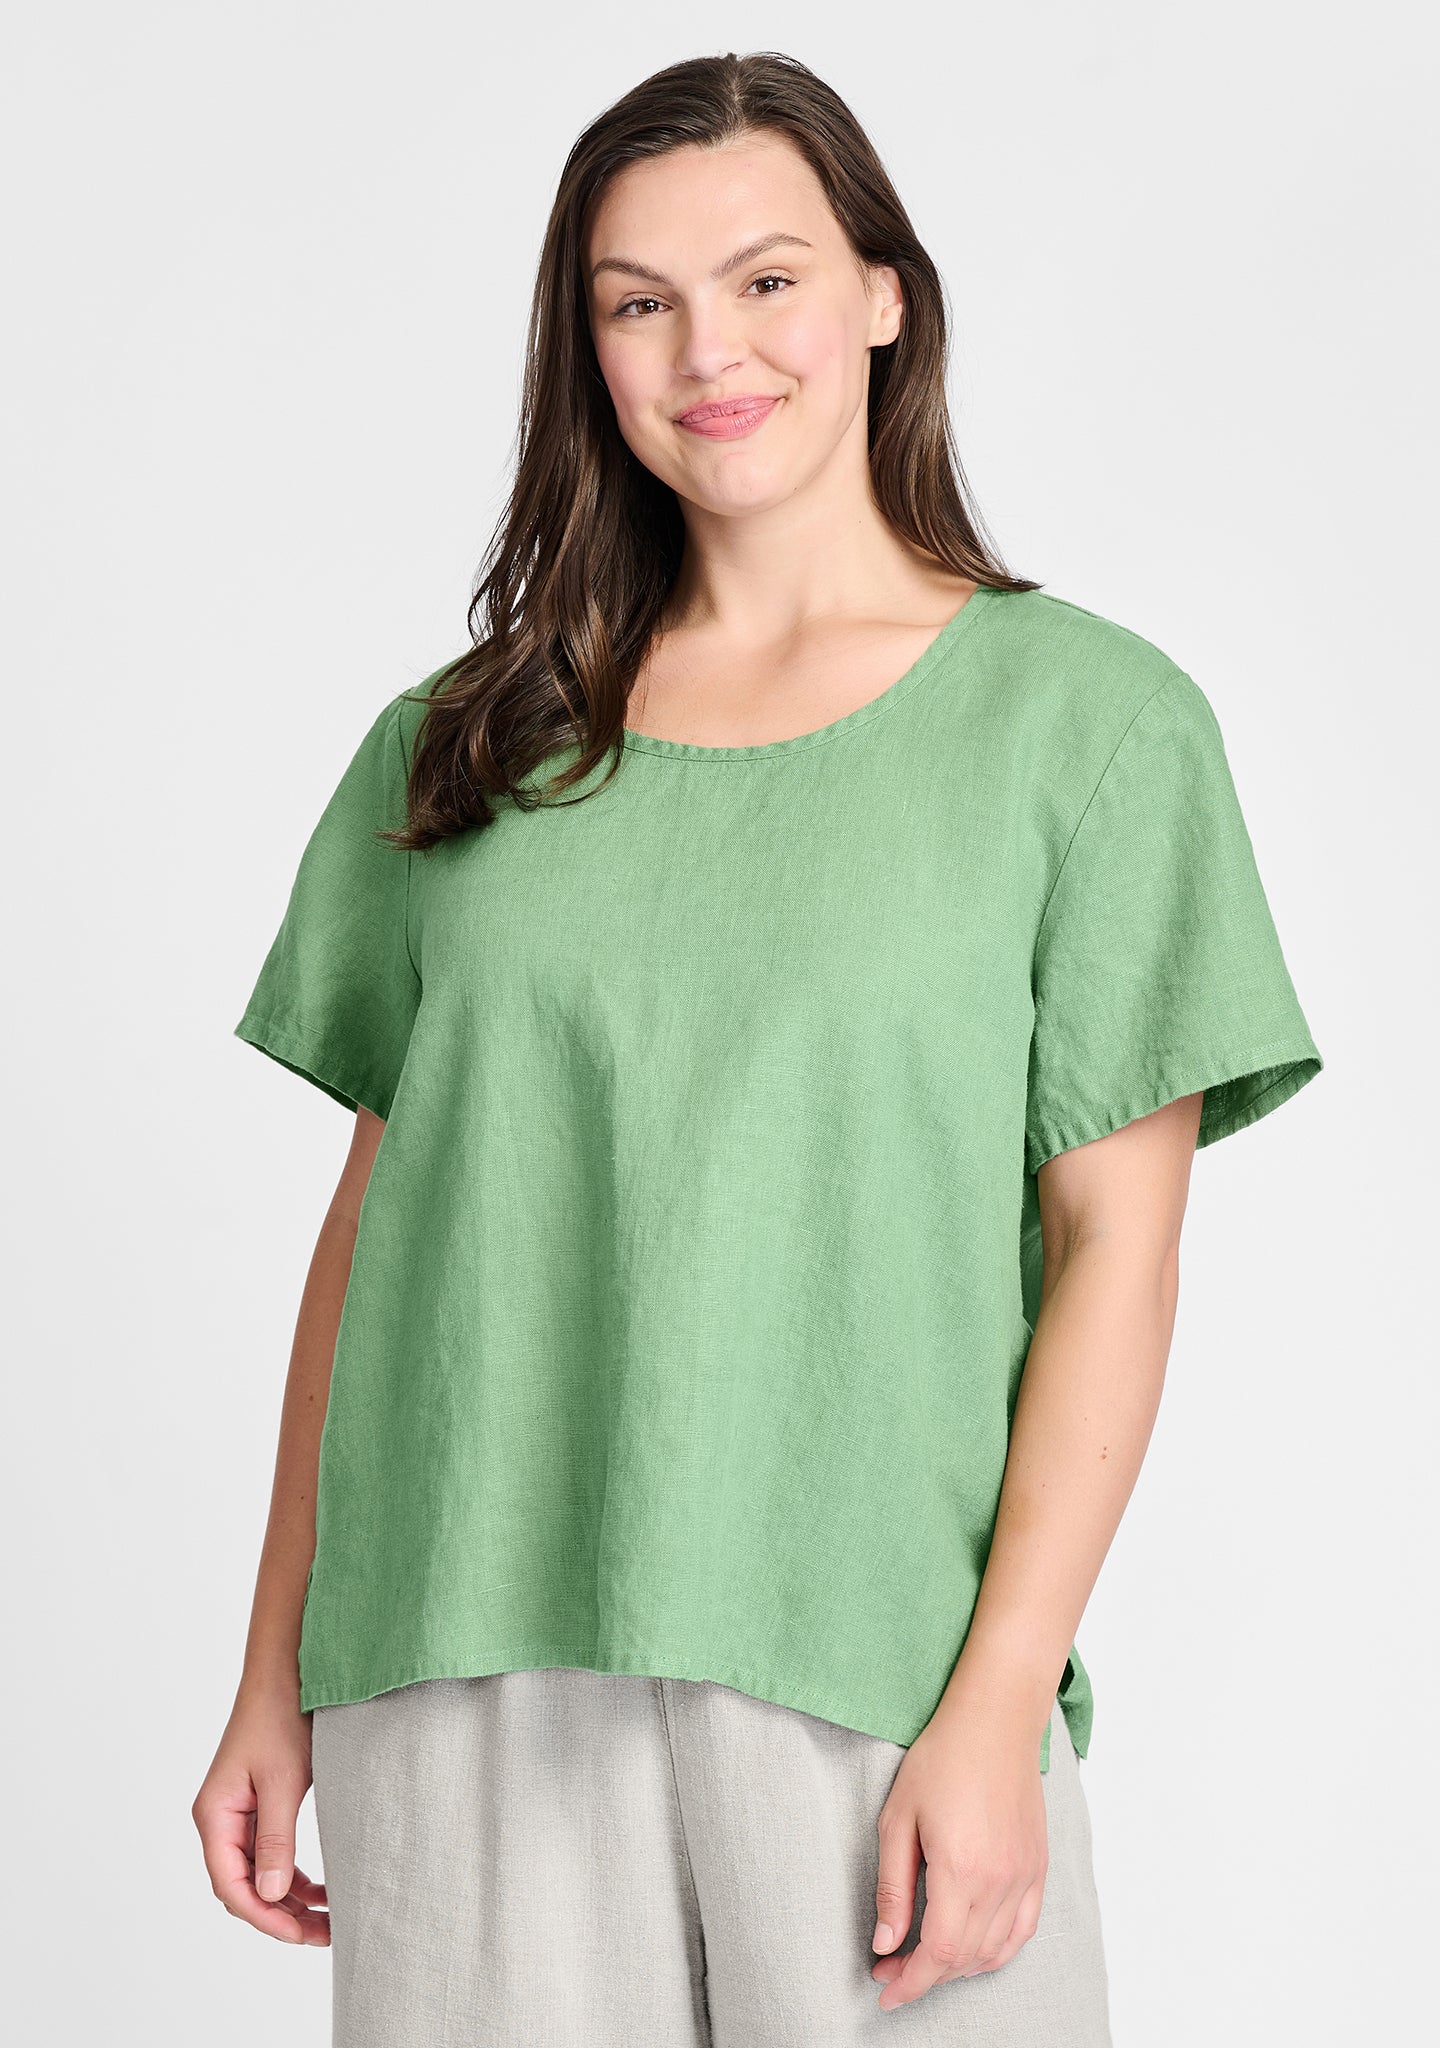 fundamental tee linen t shirt green